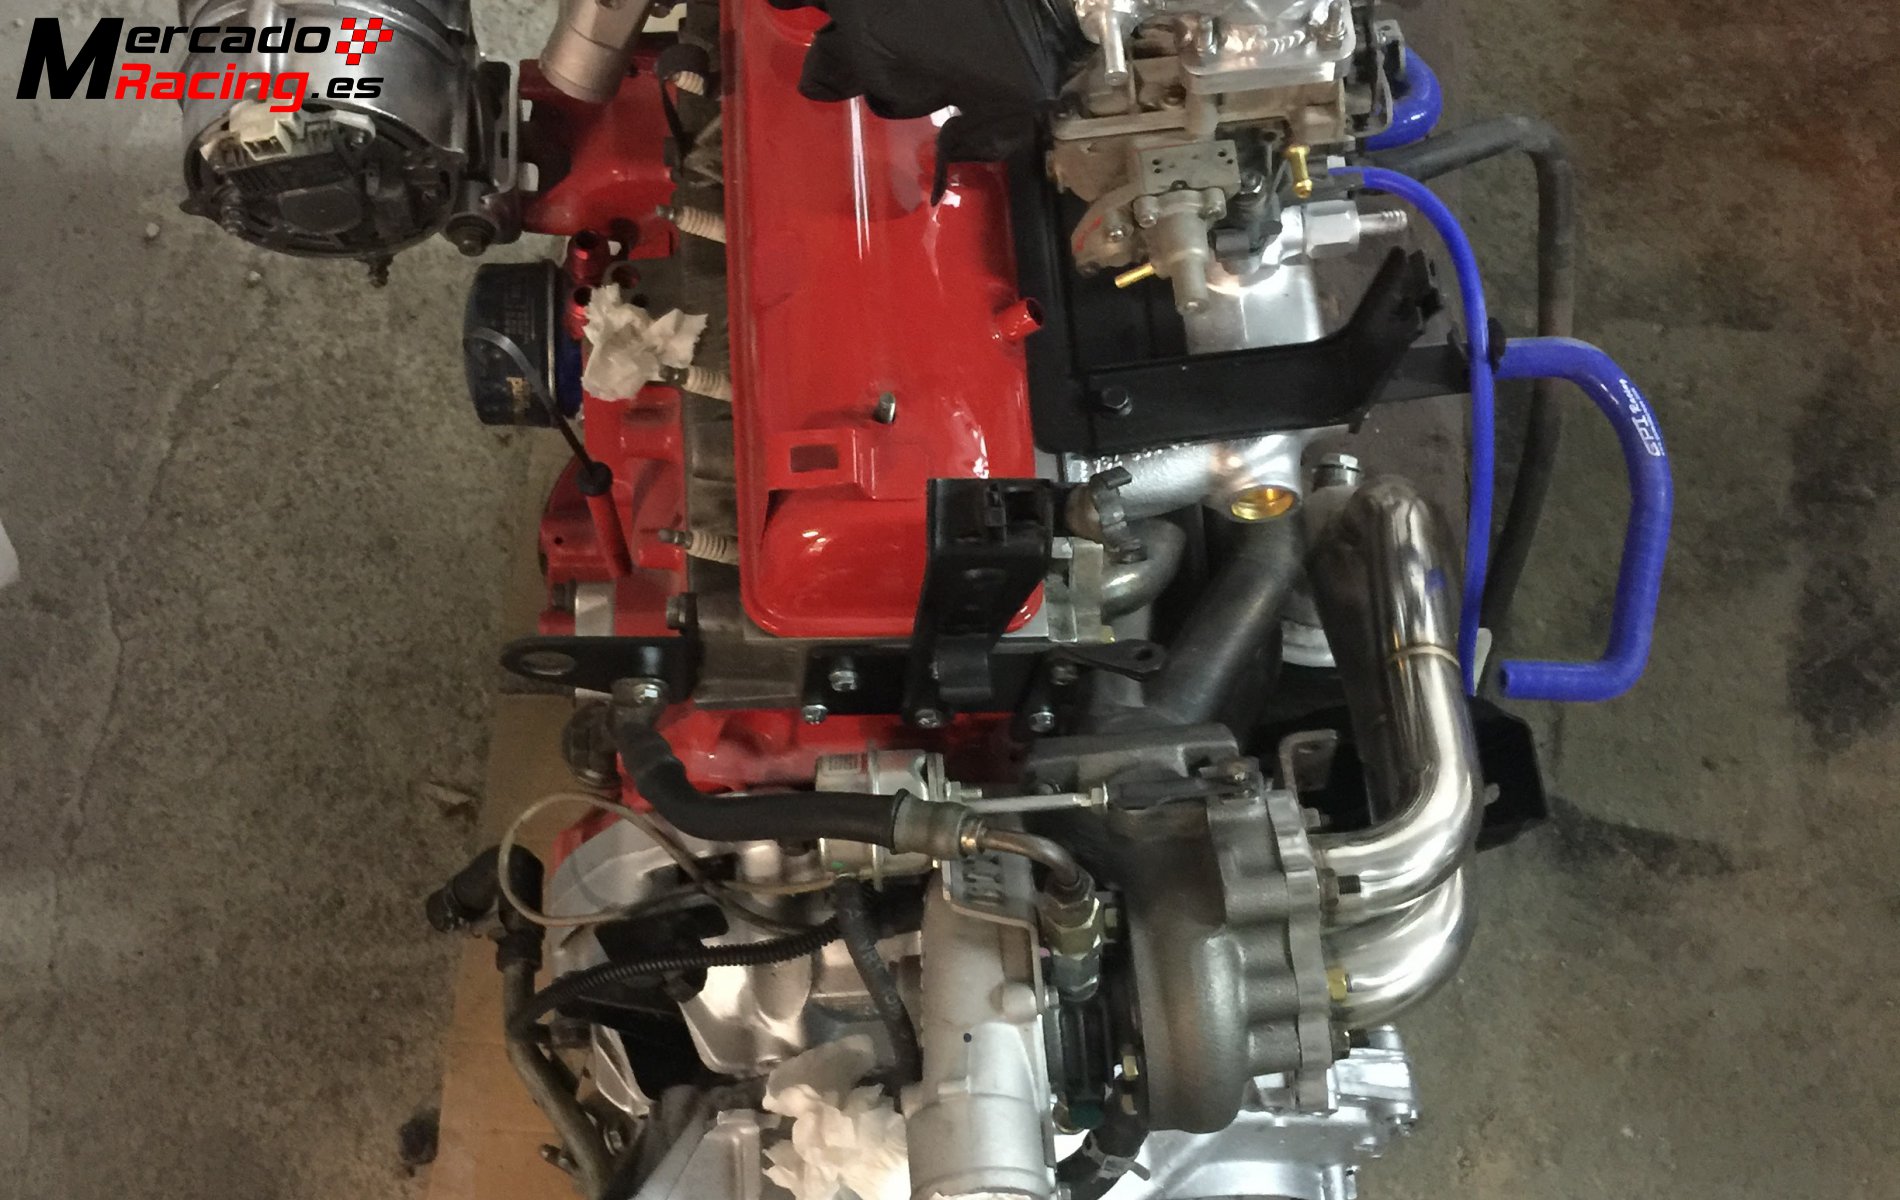 R5 gt turbo restaurado por completo (motor gordo forjado)